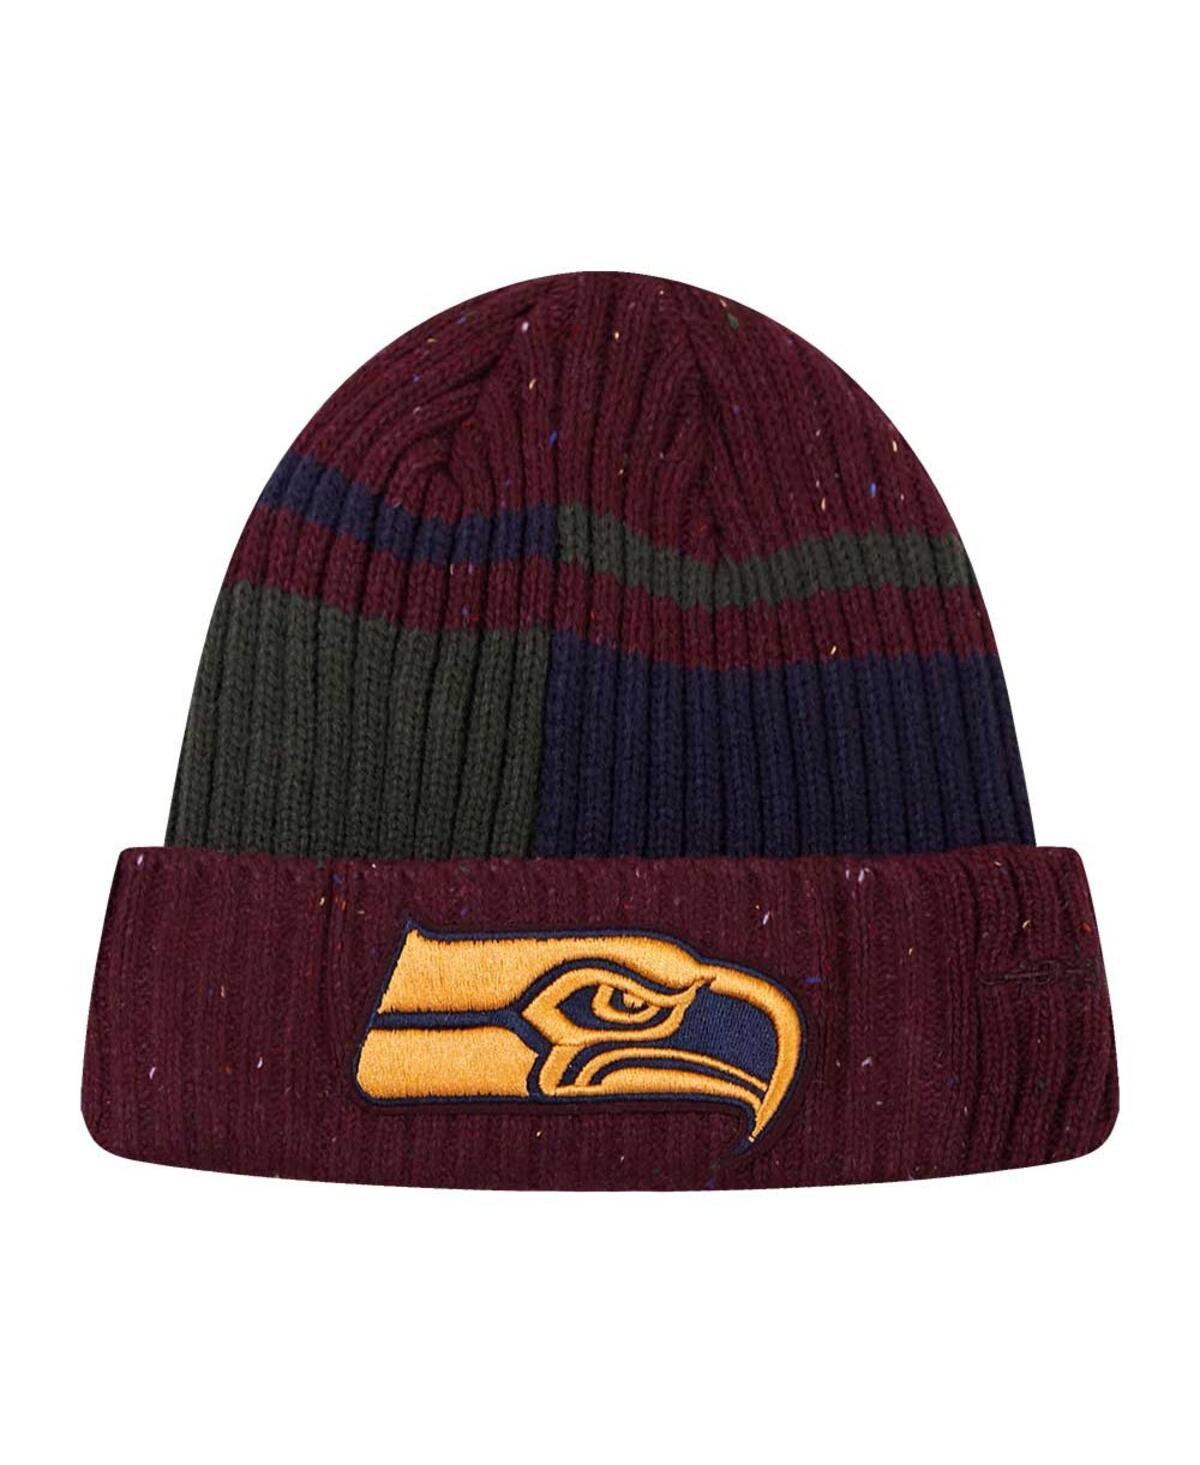 Pro Standard Men's  Burgundy Seattle Seahawks Speckled Cuffed Knit Hat